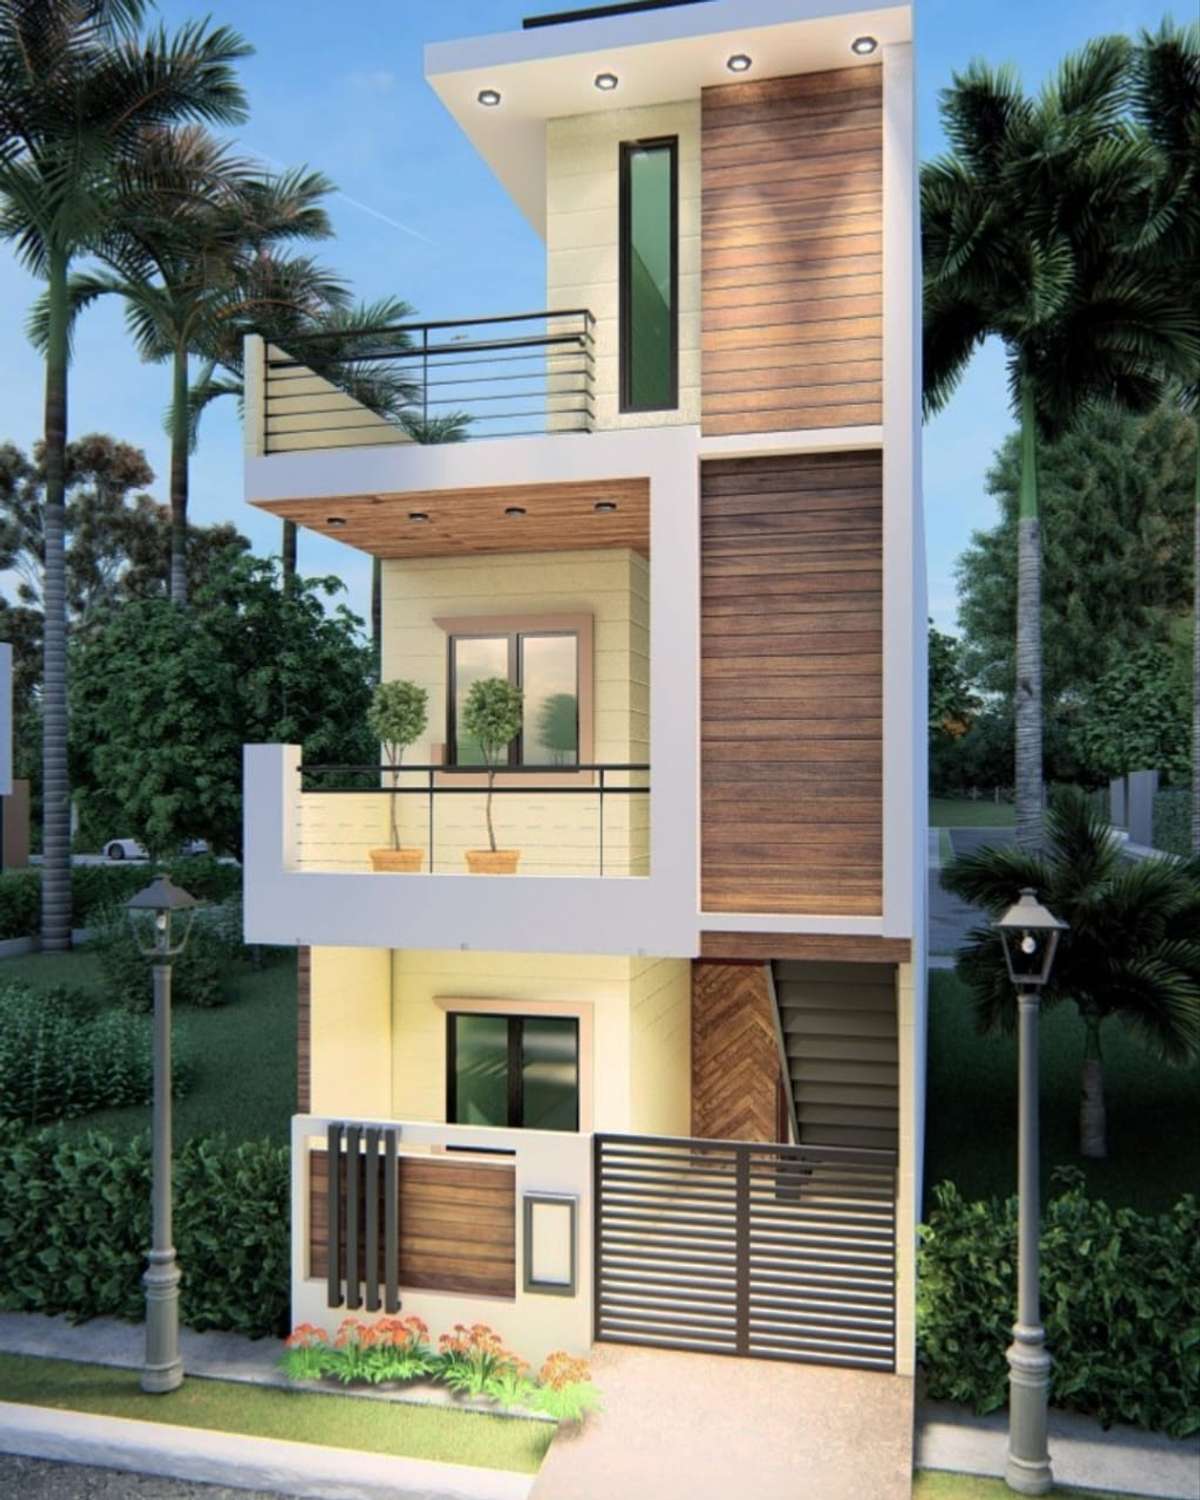 Designs by Contractor sachin meena, Indore | Kolo